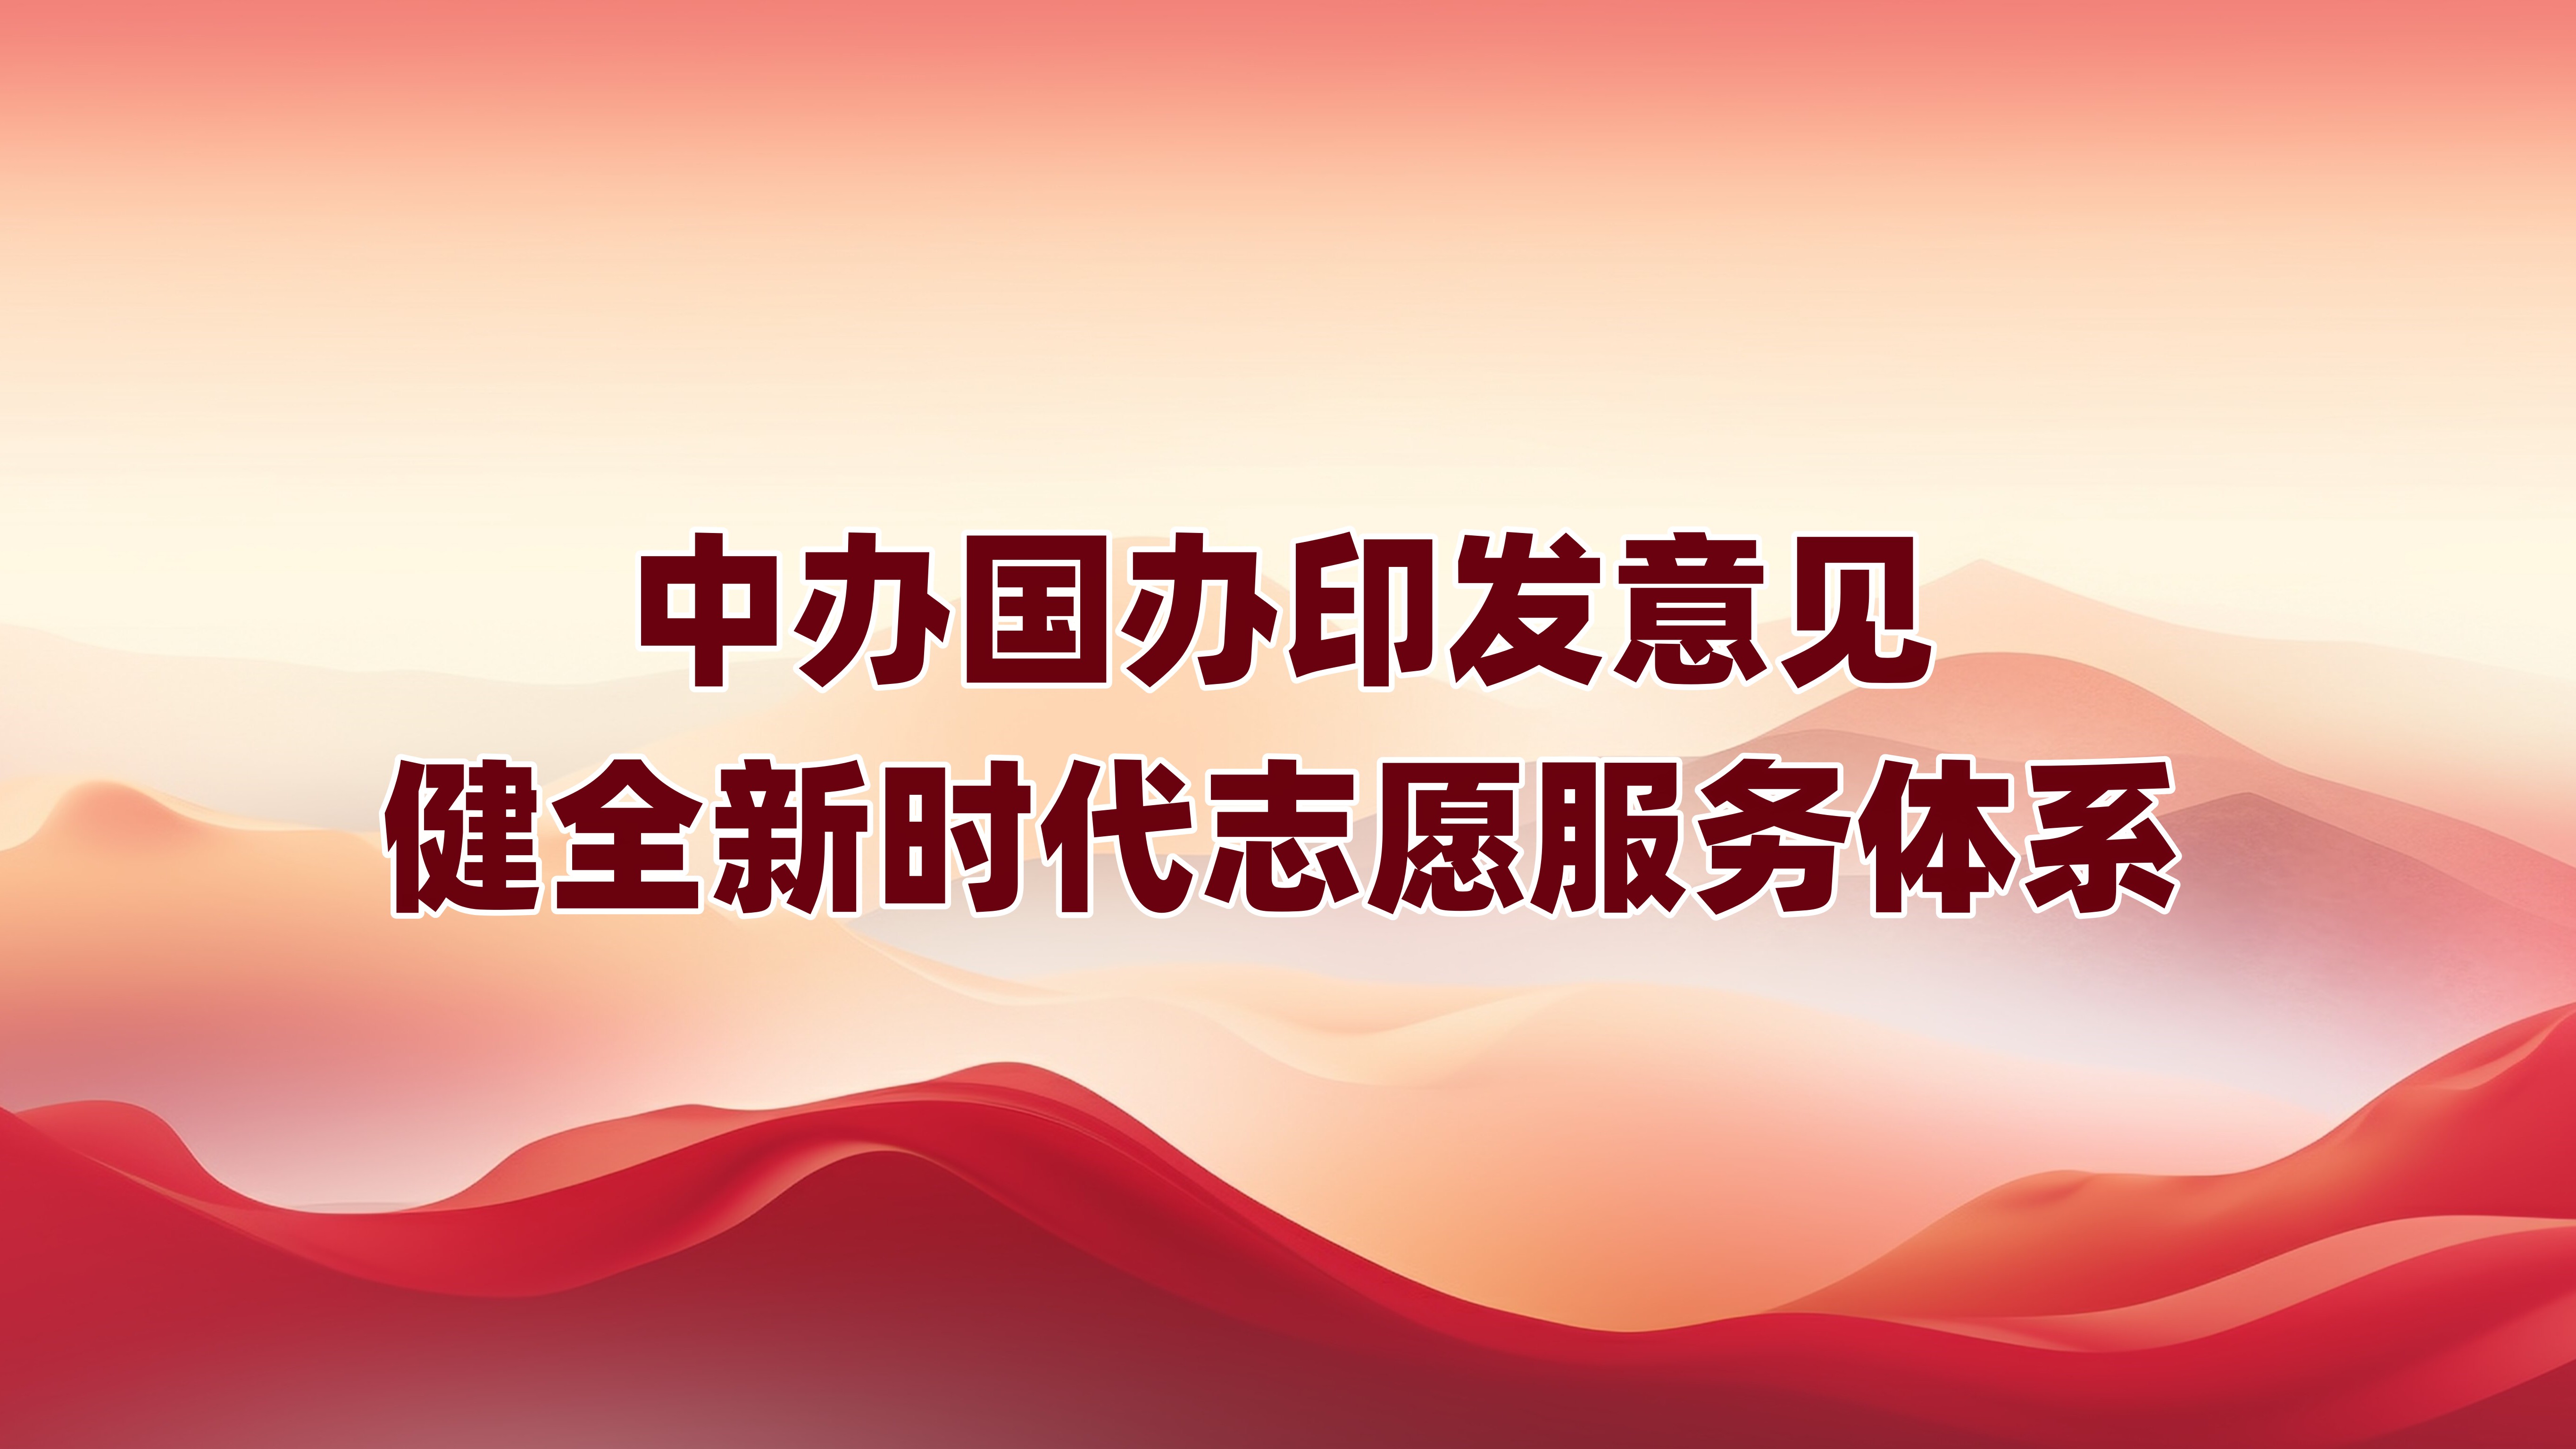 中办国办印发意见 健全新时代志愿服务体系